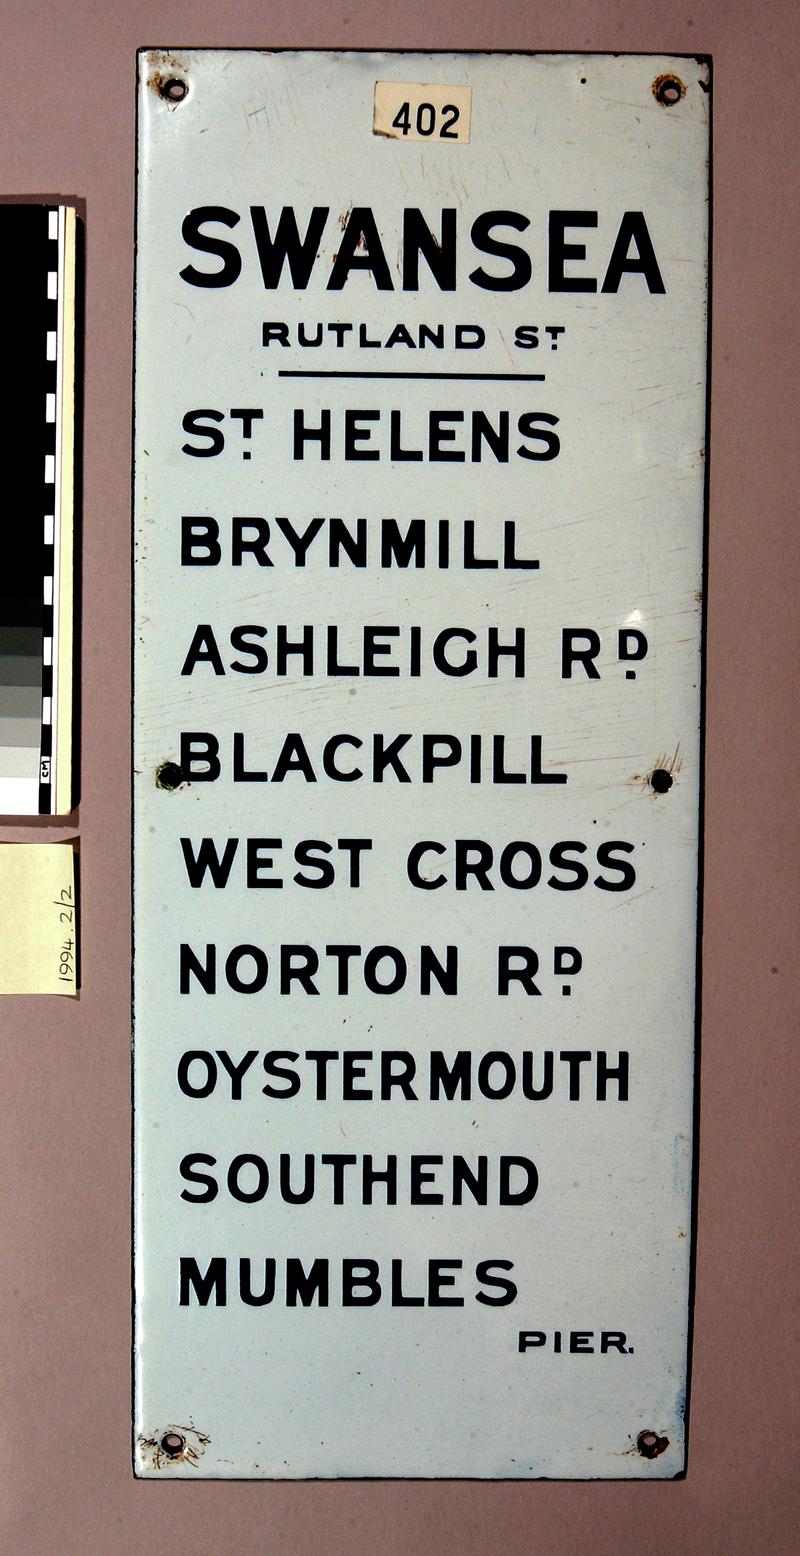 Mumbles Railway, route destination sign